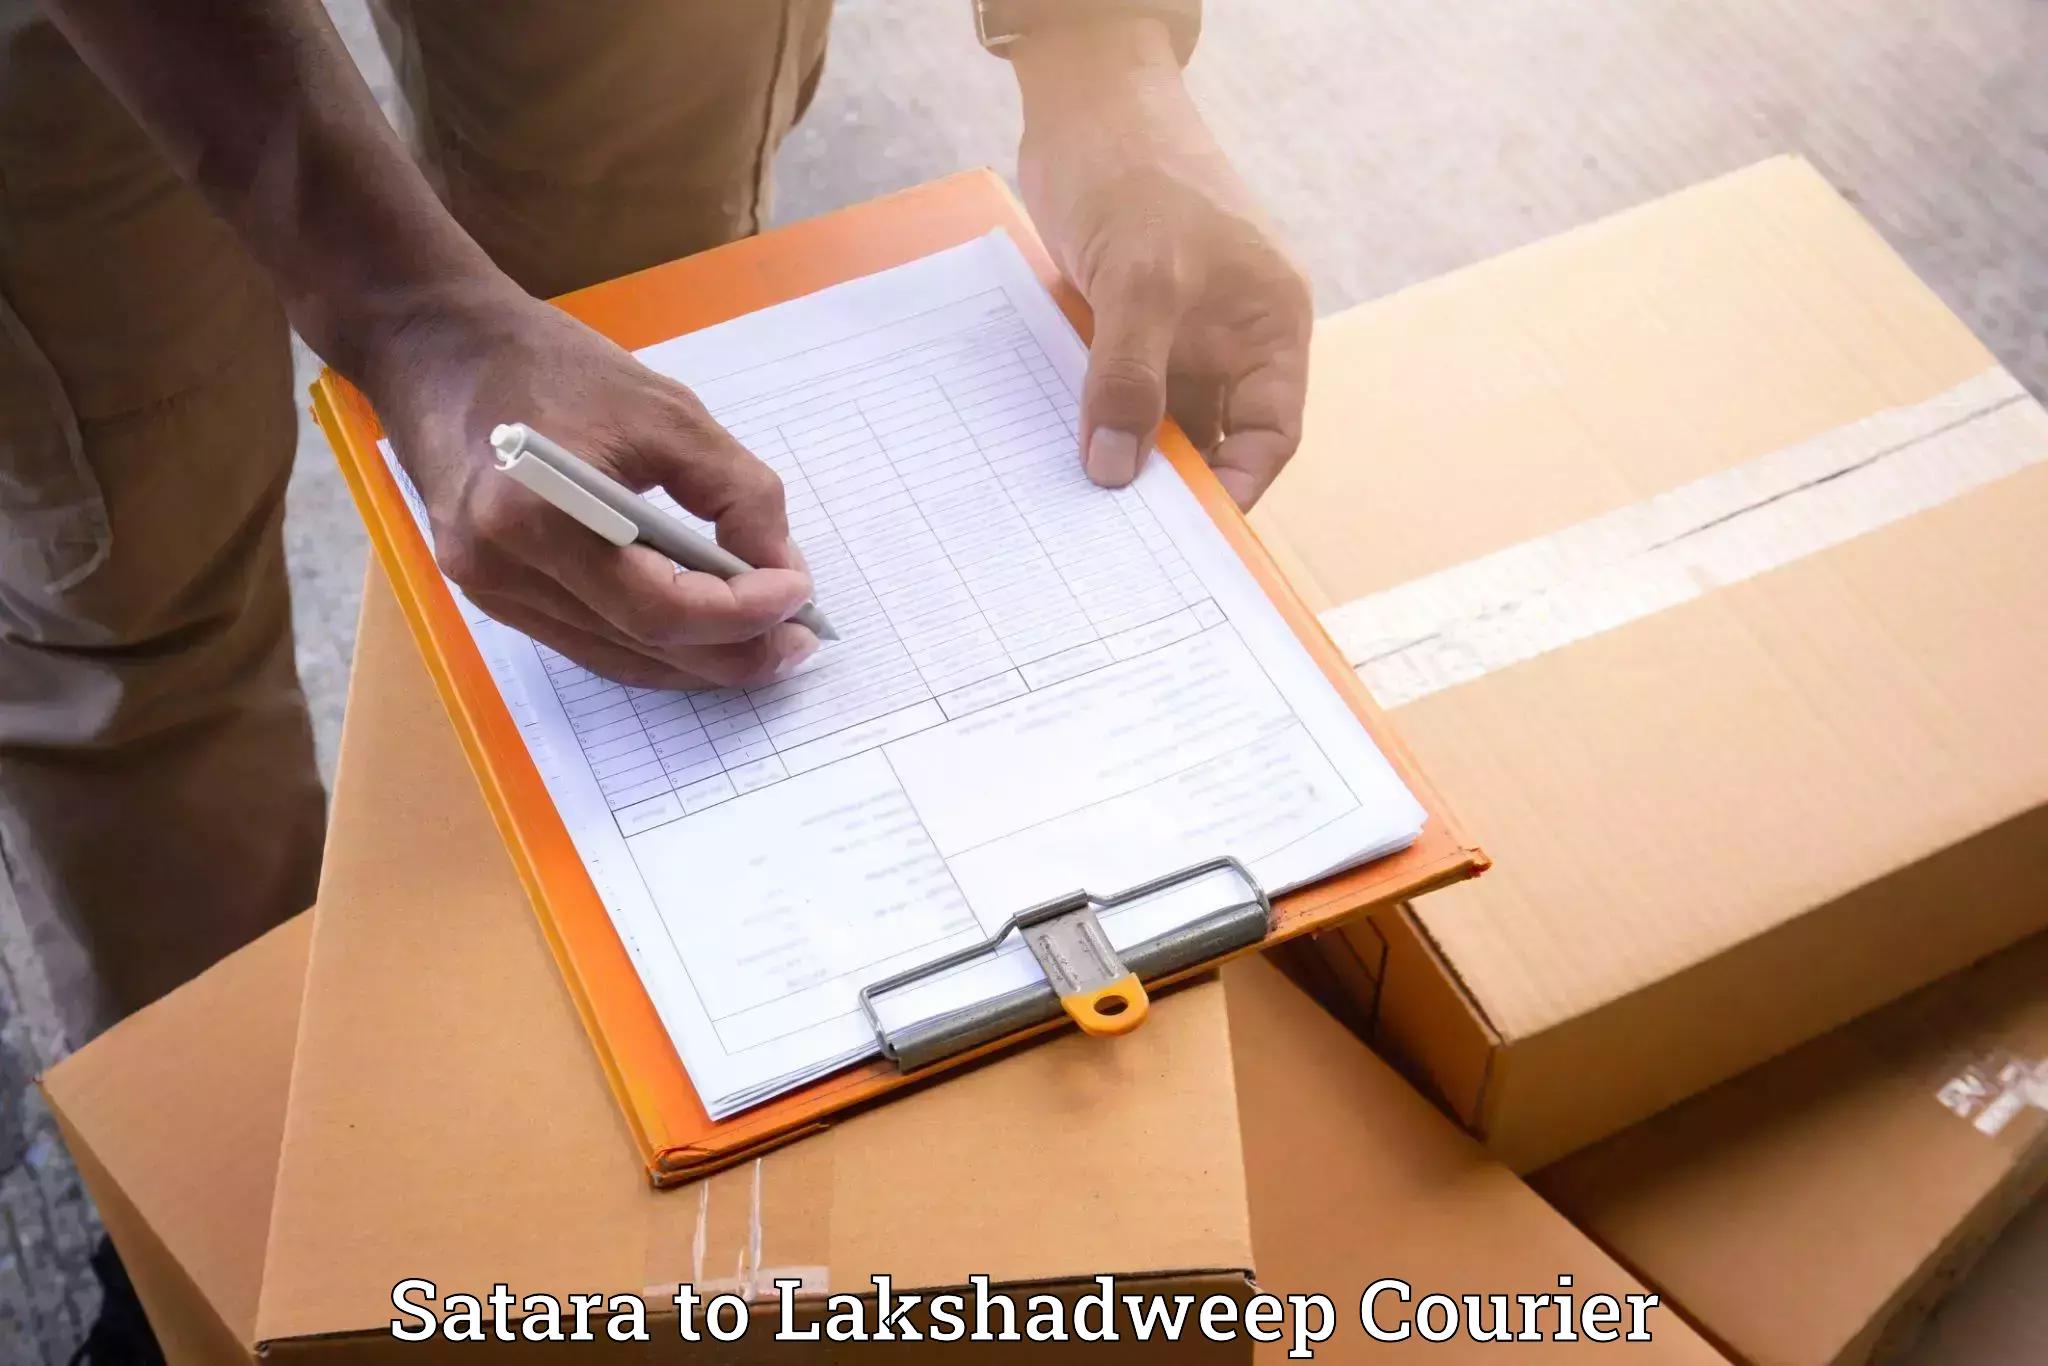 Home goods moving company Satara to Lakshadweep